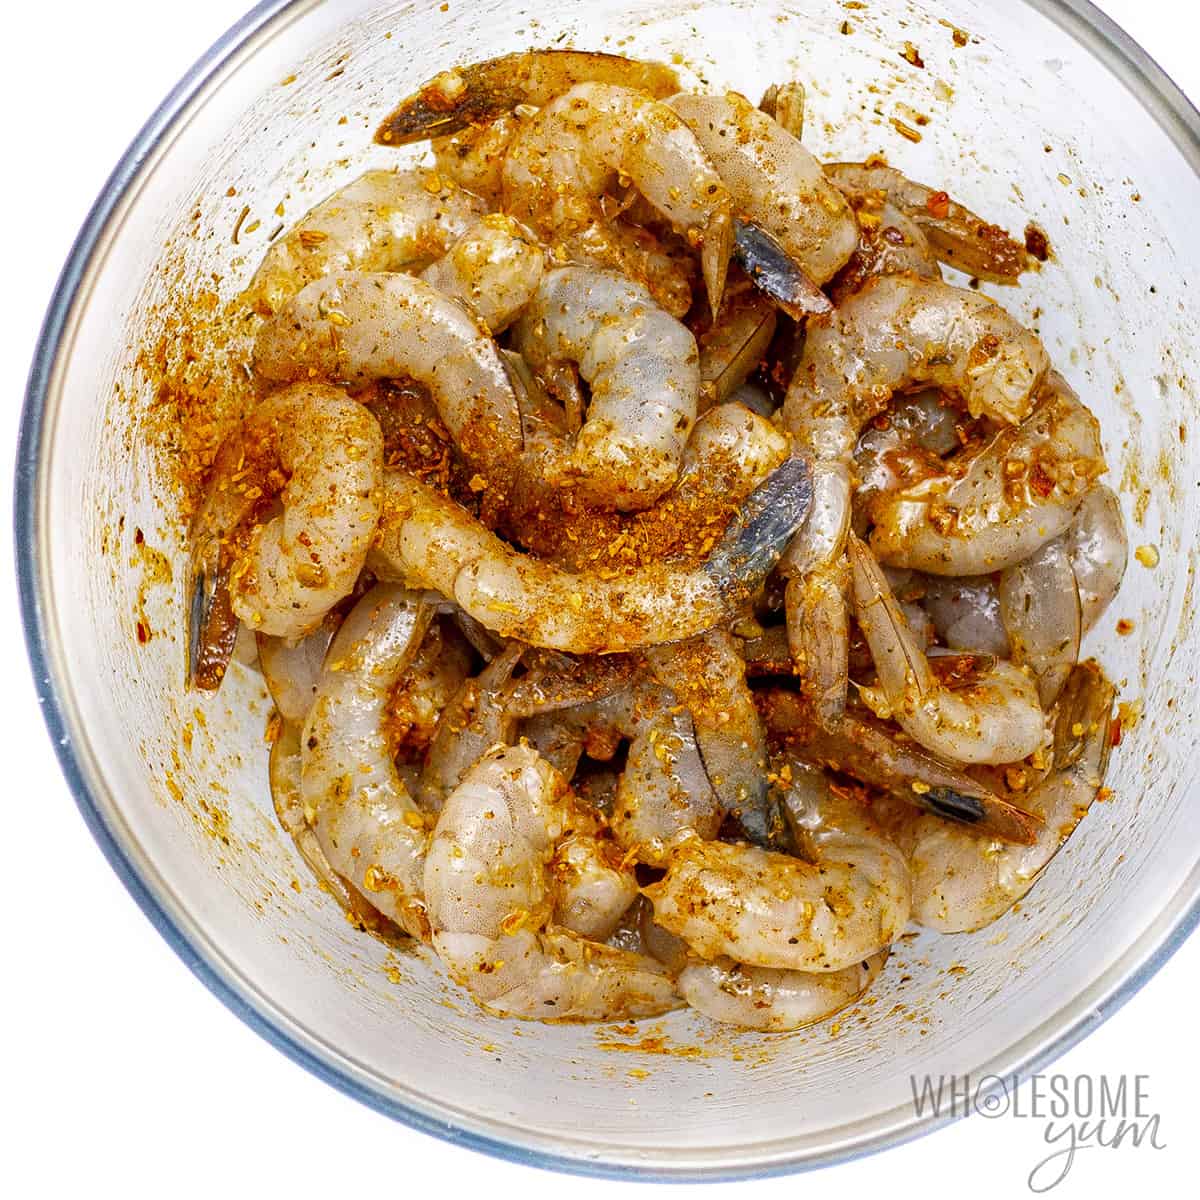 Seasoned shrimp in a glass bowl.